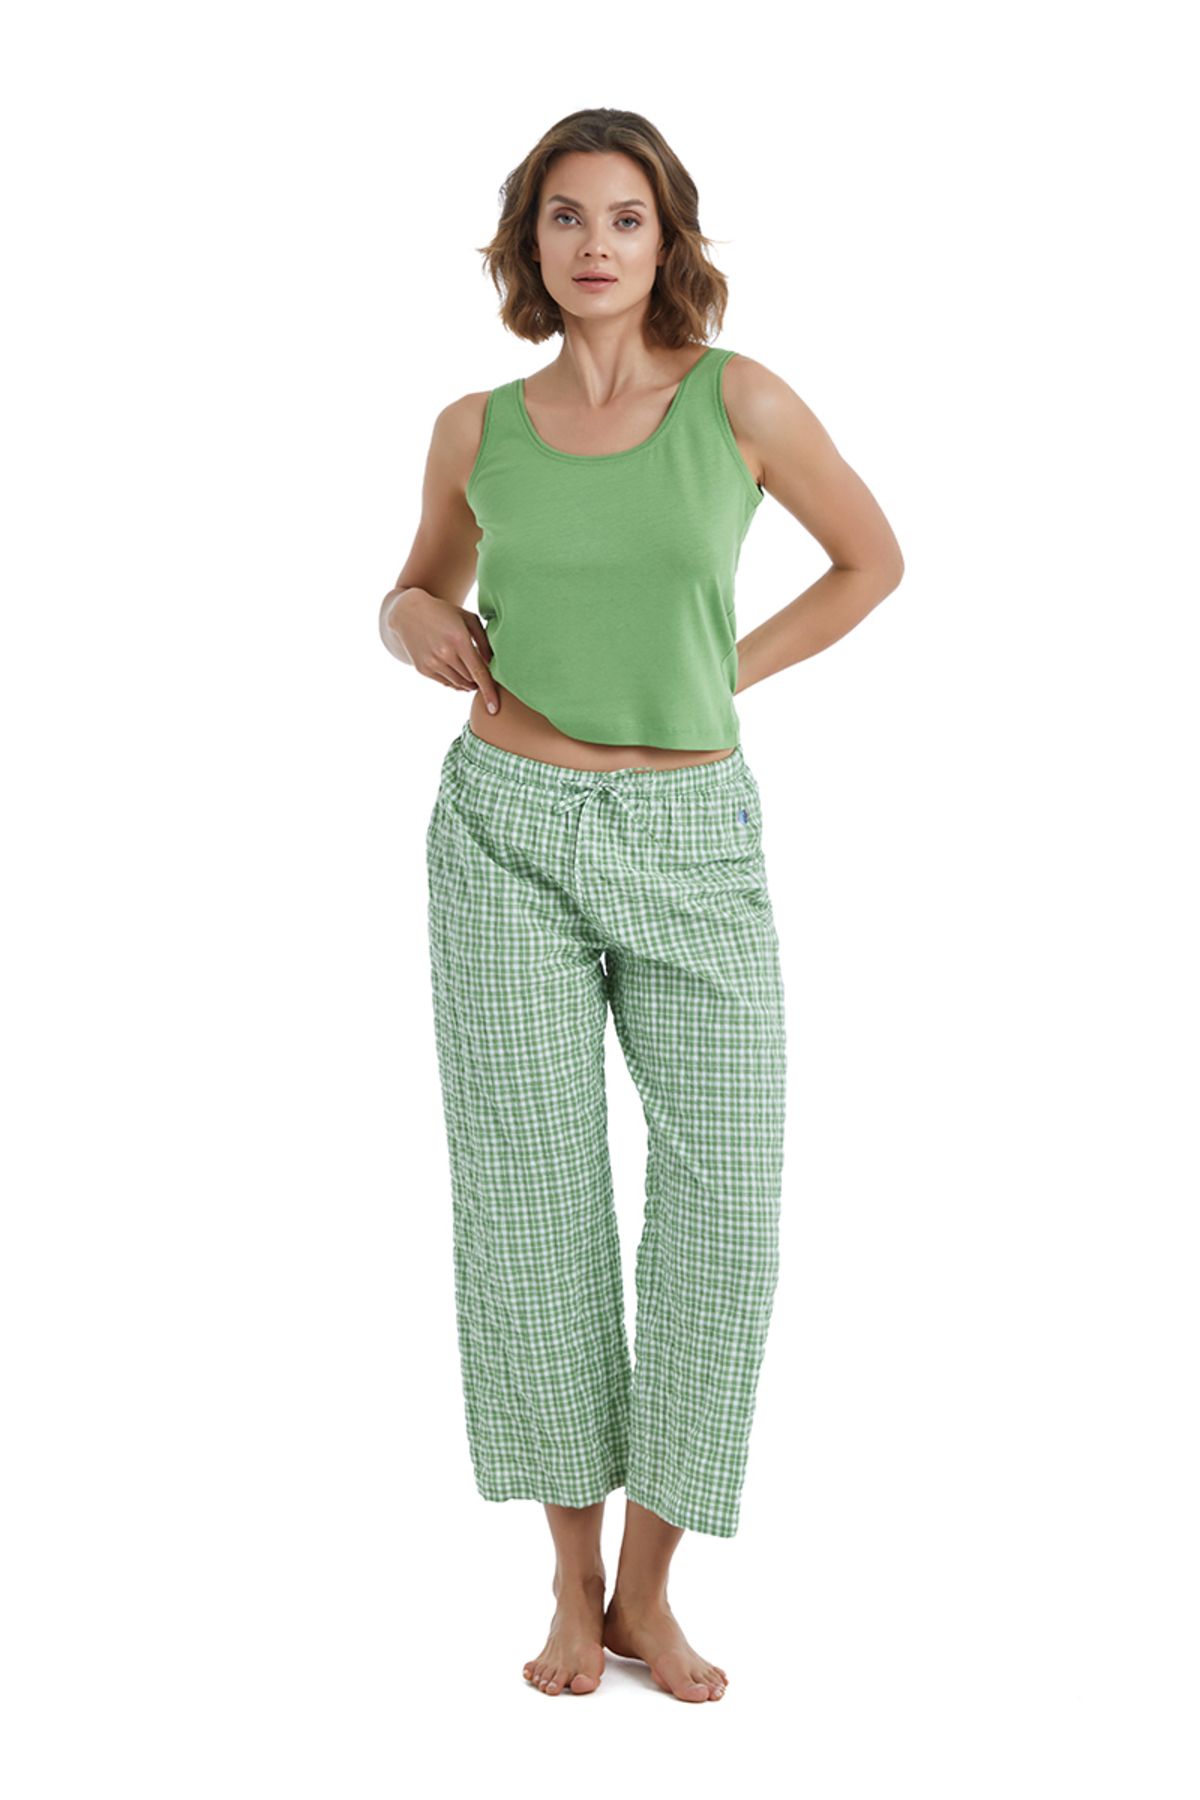 Blackspade Kadın Pijama Altı 60412 - Yeşil